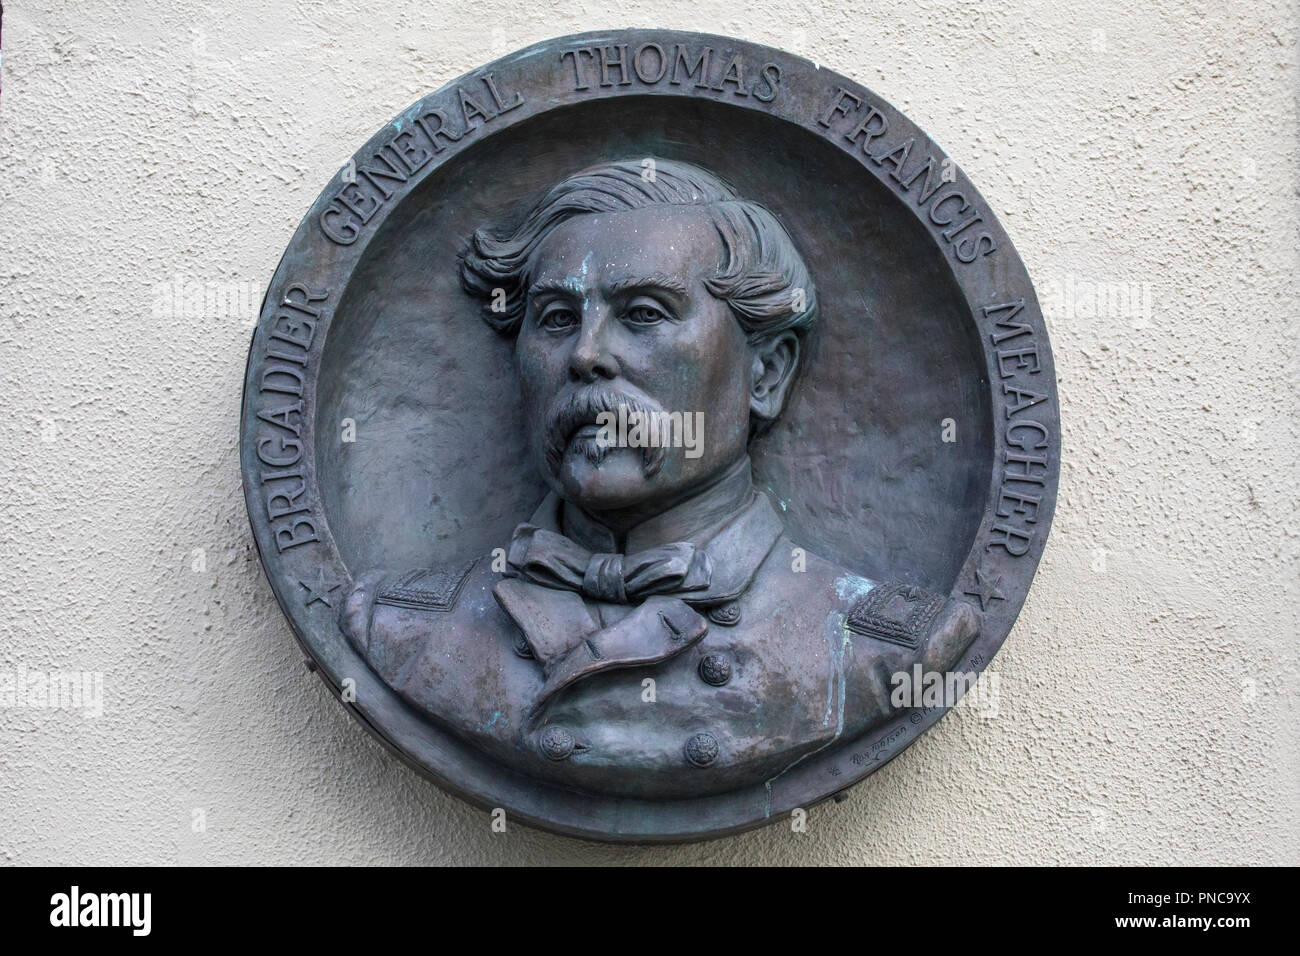 Waterford, Irland - 14 August 2018: Eine geschnitzte Gedenktafel in Erinnerung an die irischen Nationalisten Thomas Francis Meagher, in der historischen Stadt Stockfoto